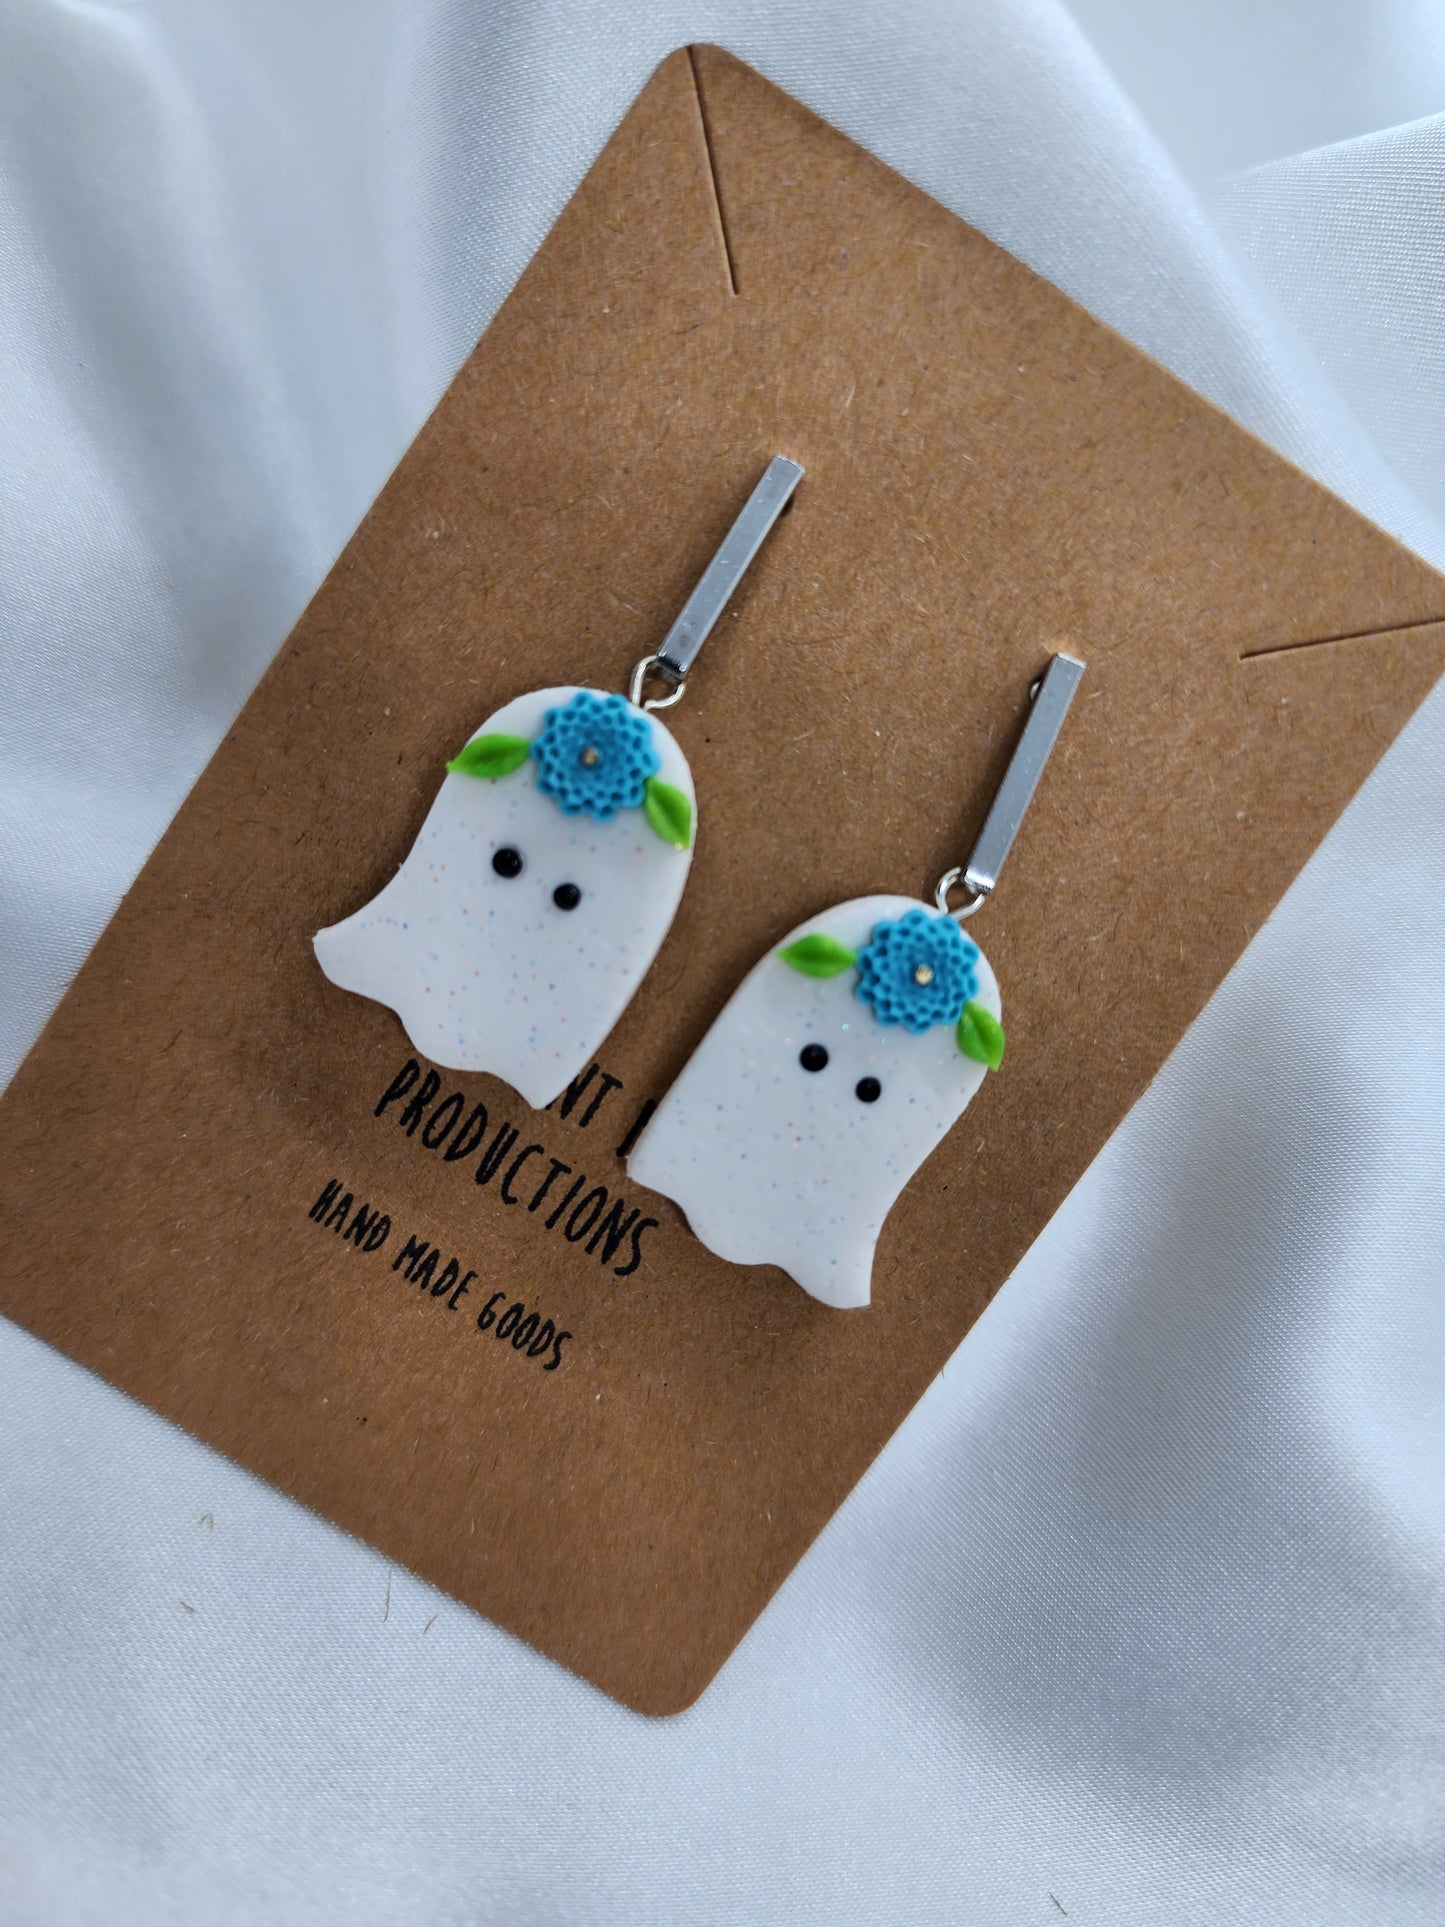 Blue floral ghost earrings